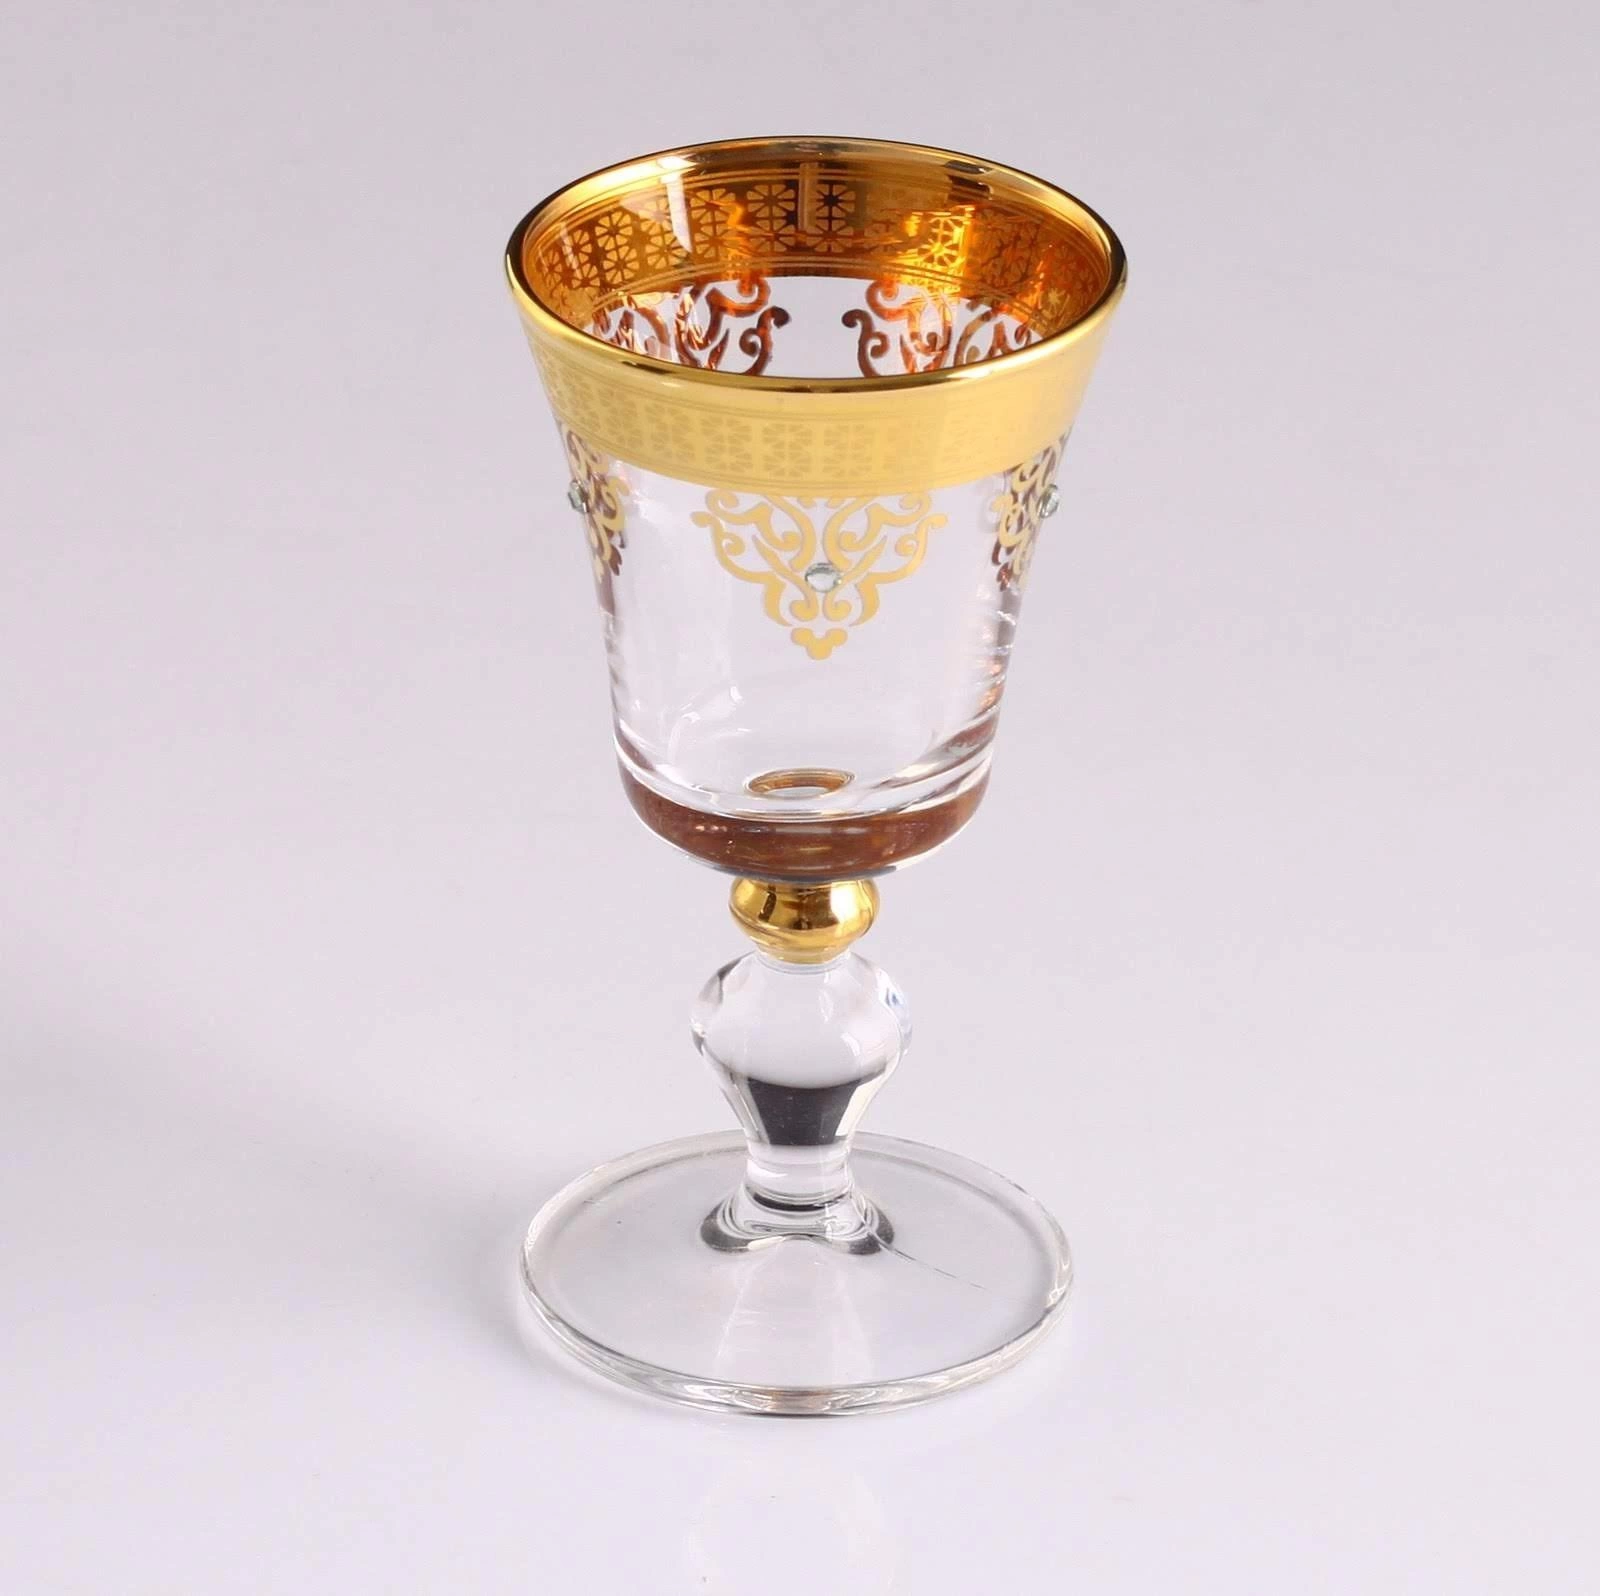 Paşabahçe 6 Kişilik Ayaklı Kahve Yanı Bardağı- Ottoman Gold